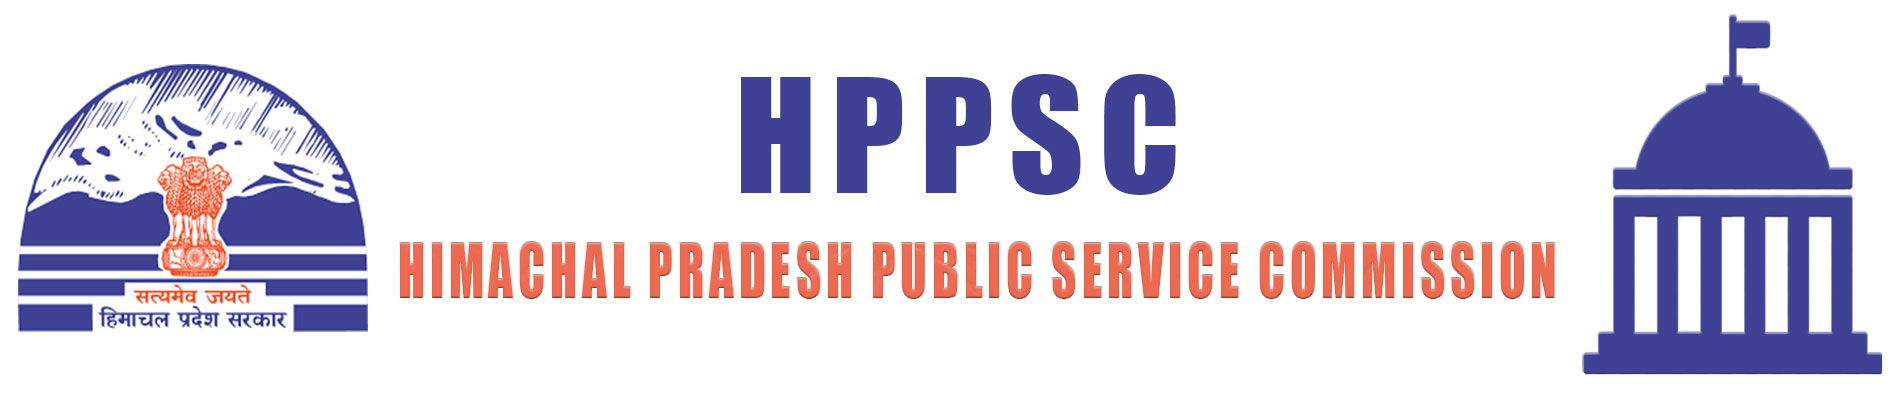 HPPSC Himachal Pradesh Public Service Commission